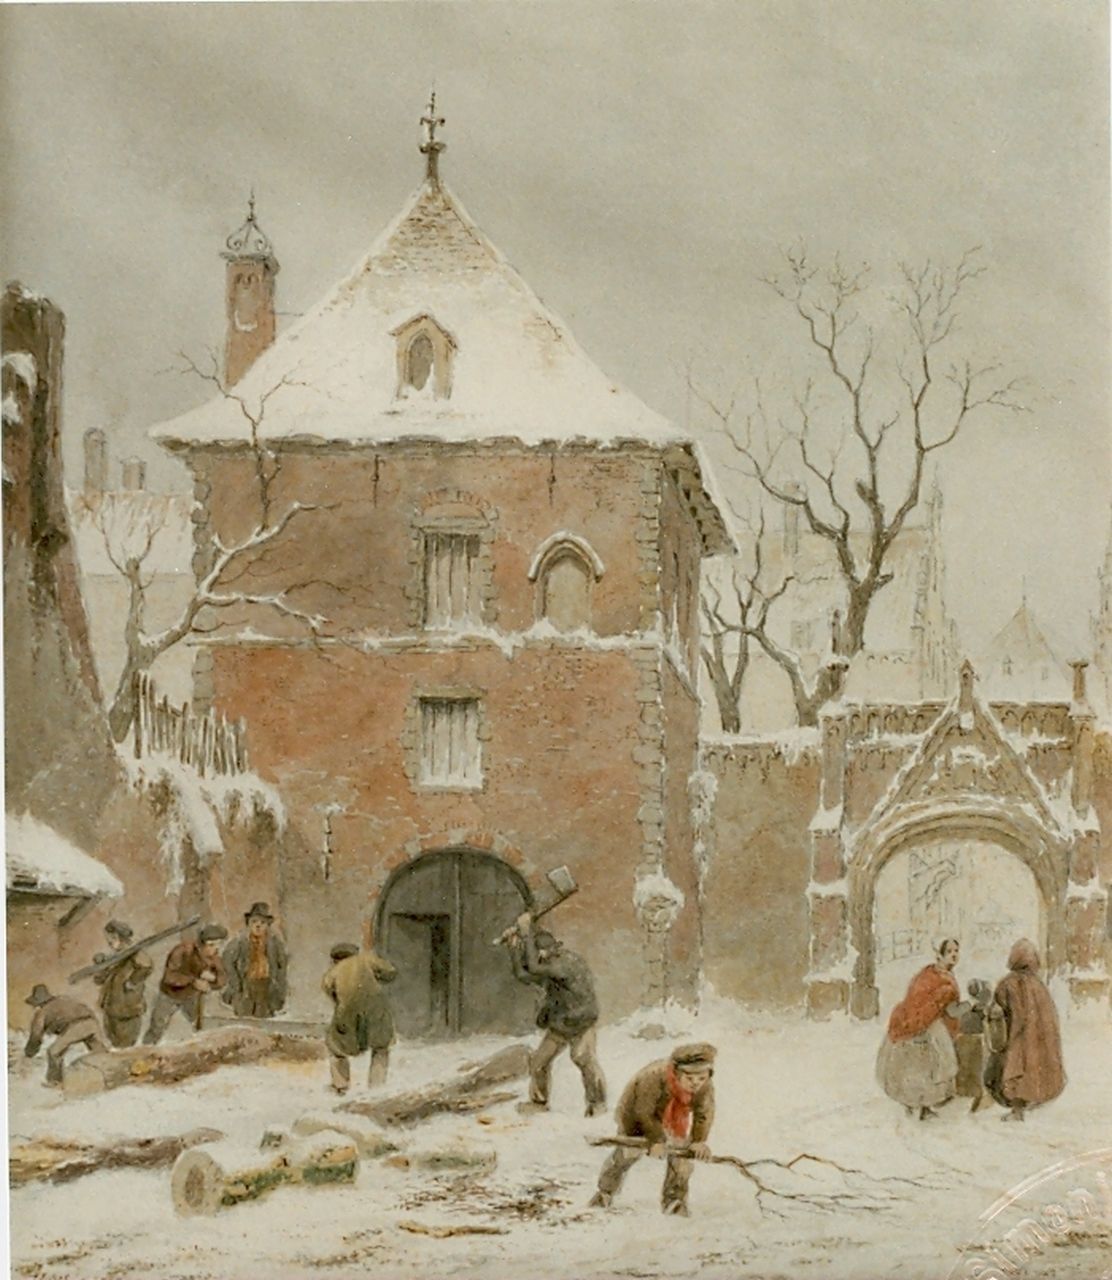 Hove B.J. van | Bartholomeus Johannes 'Bart' van Hove, Besneeuwd dorpje met houthakkers, aquarel op papier 25,5 x 22,5 cm, gesigneerd linksonder